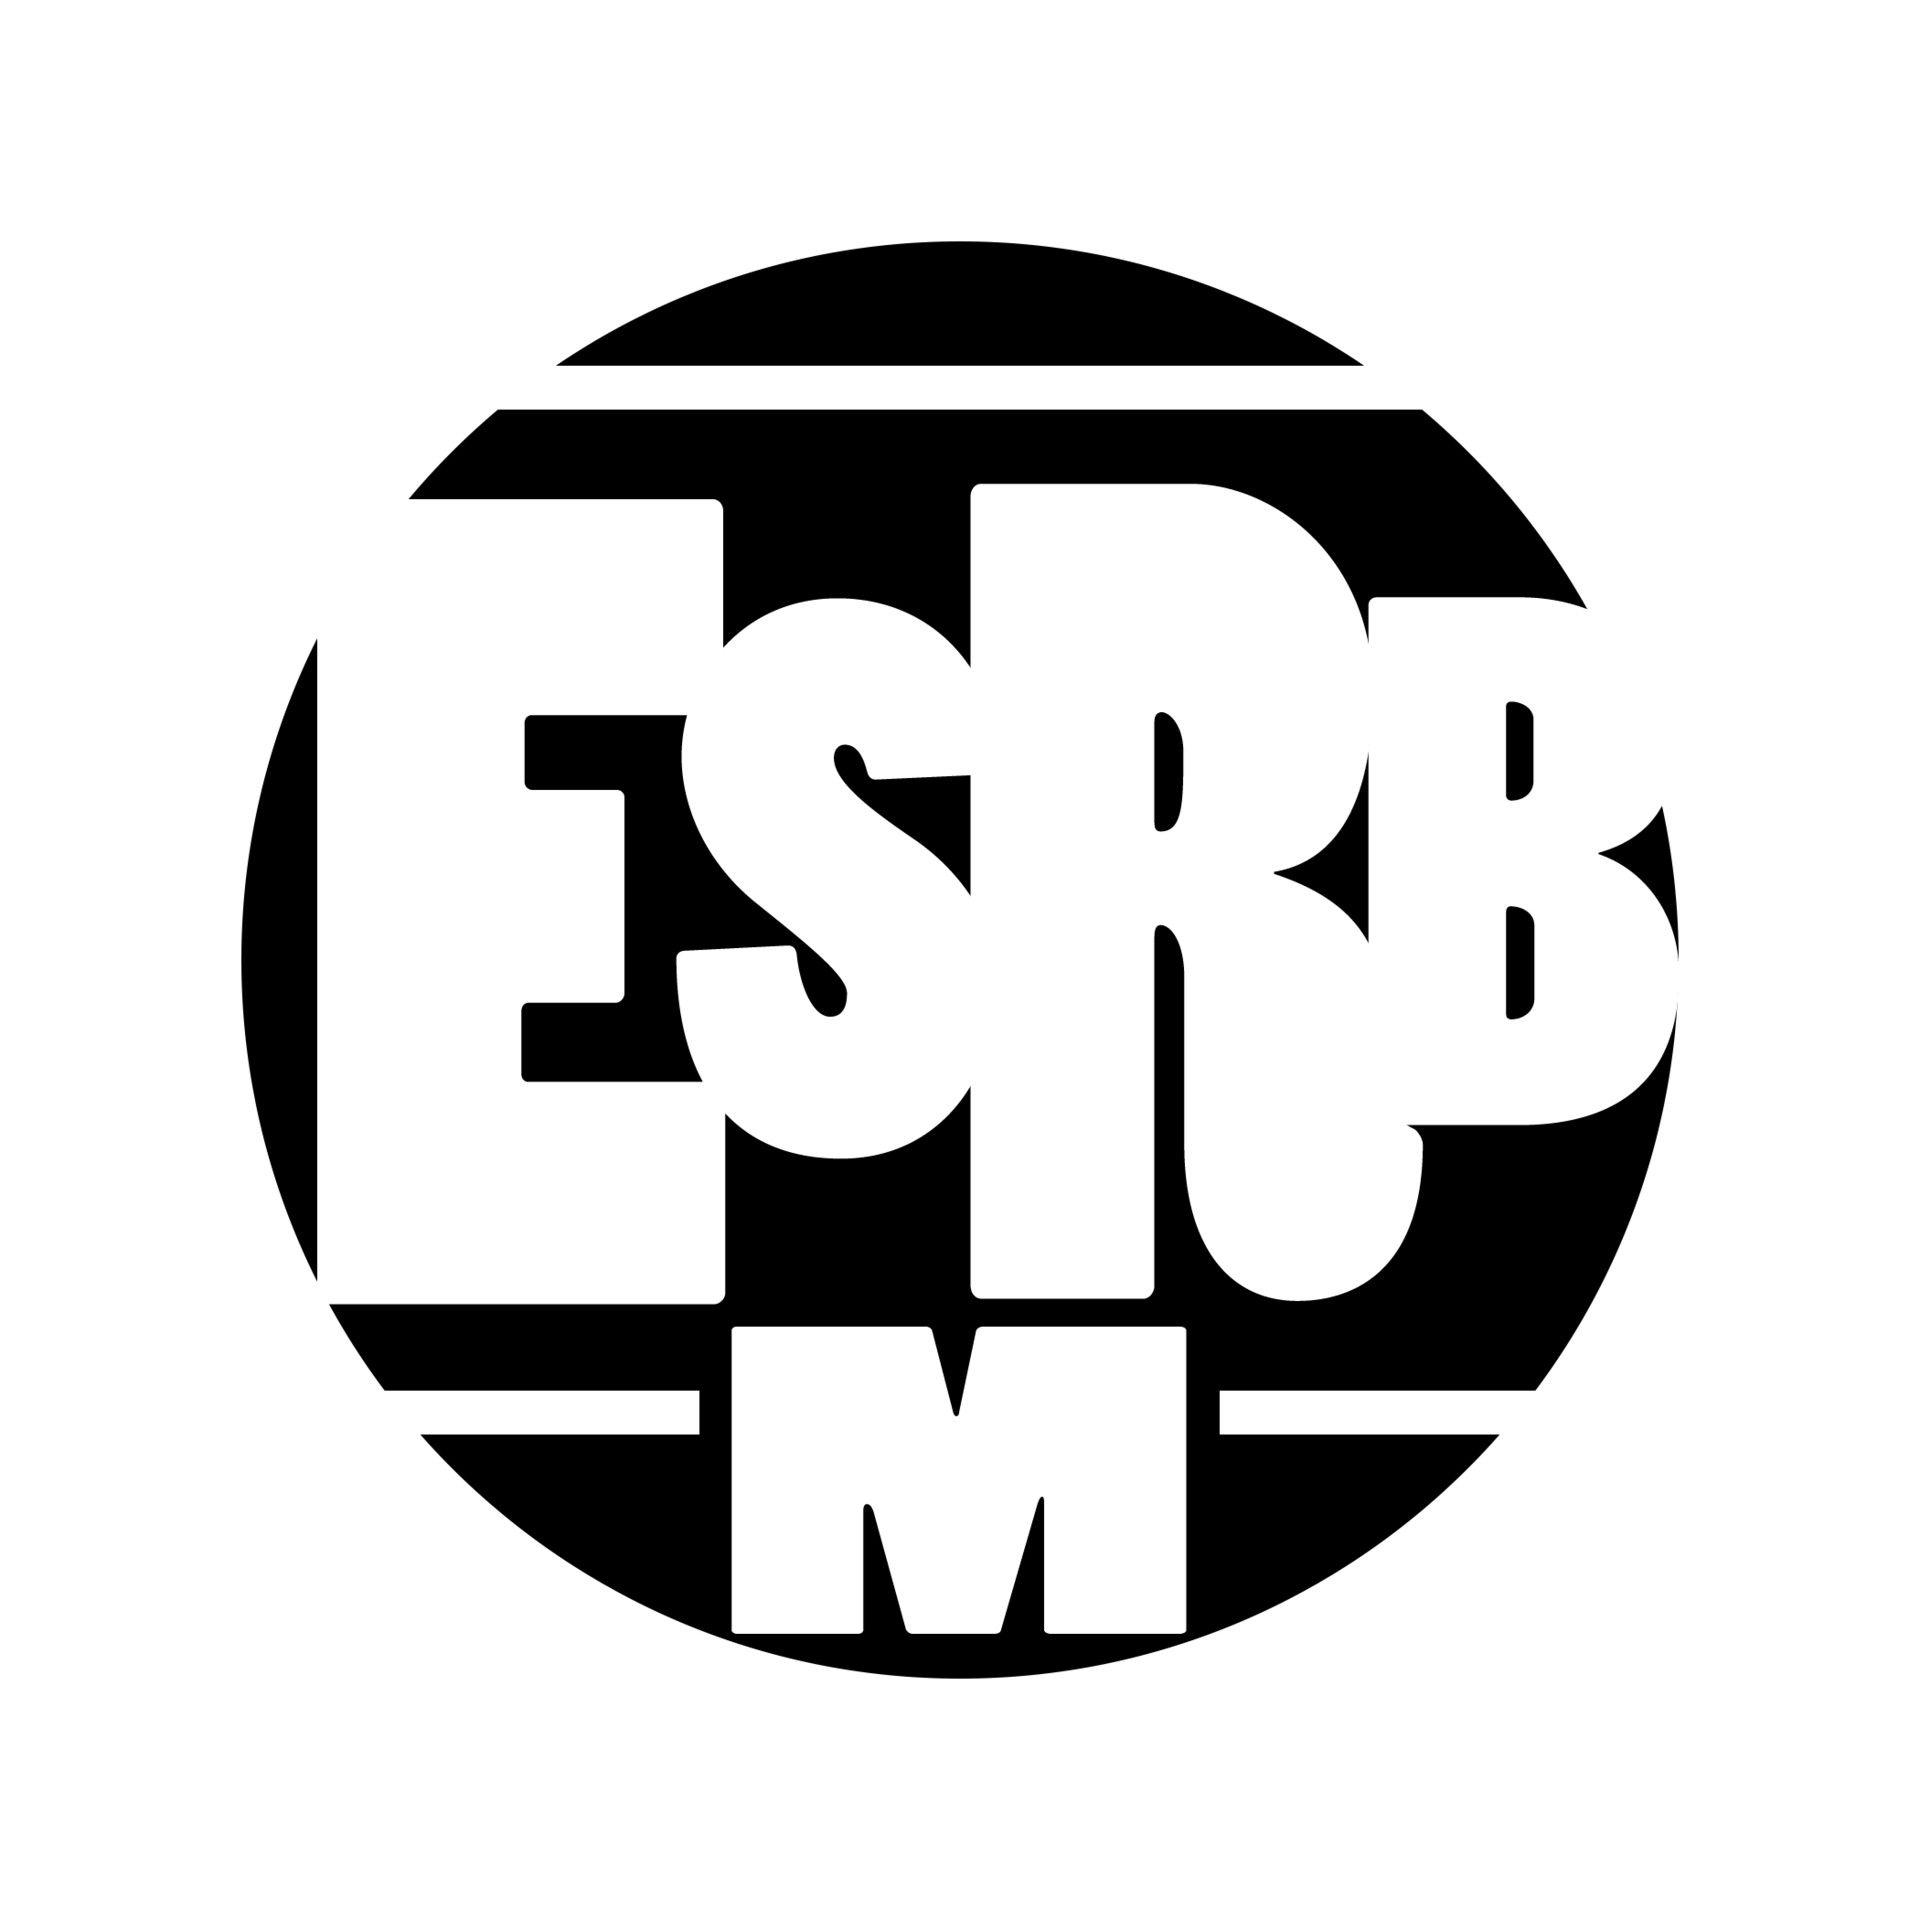 ESRB Logo - ESRB Logo Redesign, Jolie M